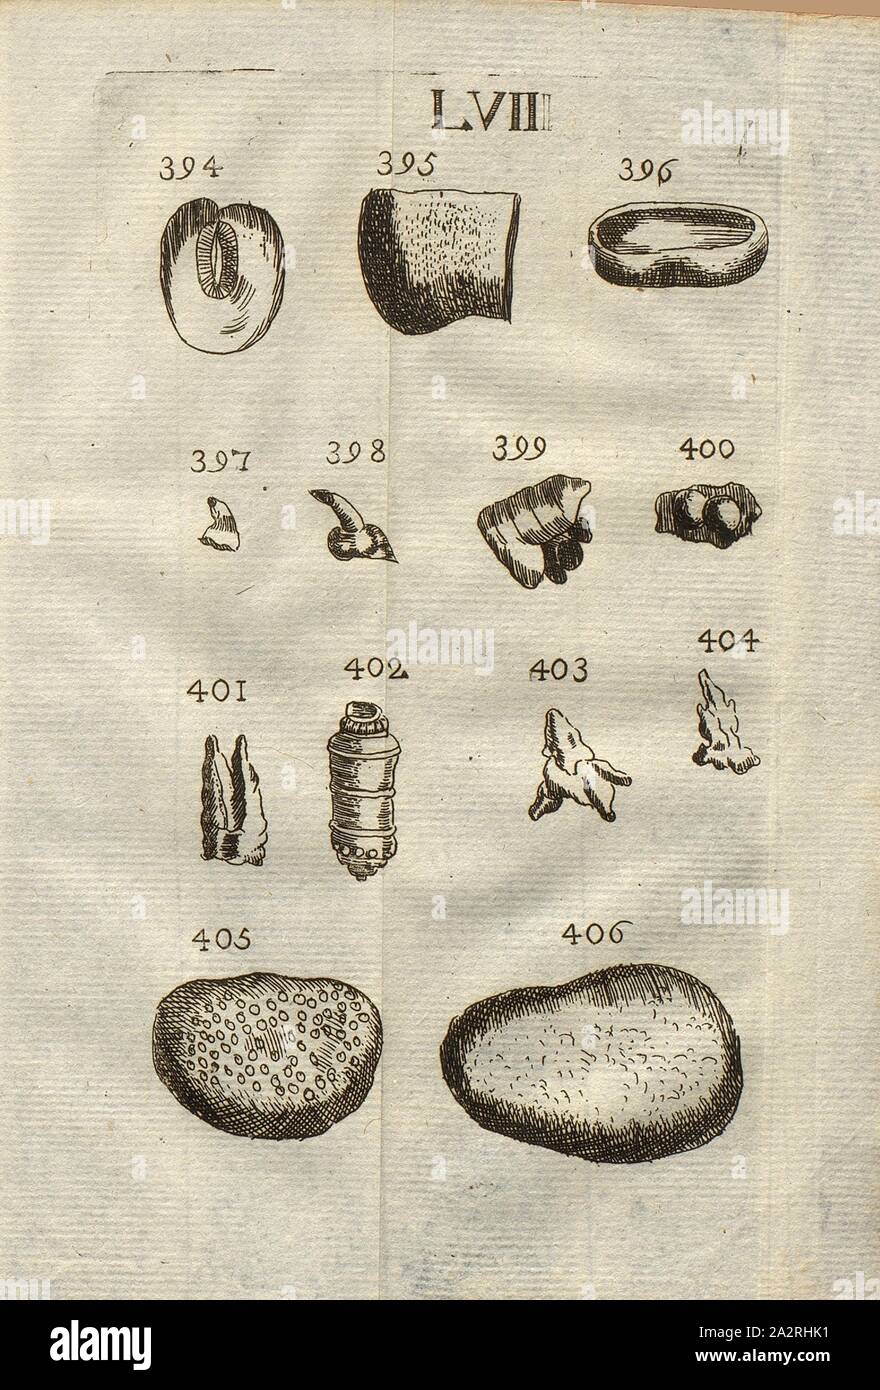 Hysteroliths, teeth of various species of fish, dentato, echinid ossicles, echinid bones, hammitae, class IV, LVII, Fig. 394 Hysterolithe de M. Lang, Fig. 395: Fragment d'un os de poisson, Fig. 396: Dent concave du poisson que les Napolitains appellent Dentato, Figs. 397 & 398: Osselets d'Echinites, fig, 399 & 400: Pétrifications de figure bizarre, Fig. 401: Os d'Echinite, Fig. 402: Rayon d'Echinite couronne, Fig. 403 & 404: Petits os d'Echinite, Figs. 405 & 406: Amas de petits, oeufs de poisson pétrifiés, appellés aussi Hammitae, pl. LVII, after p. 312, 1778, Louis Bourget: Traité des Stock Photo